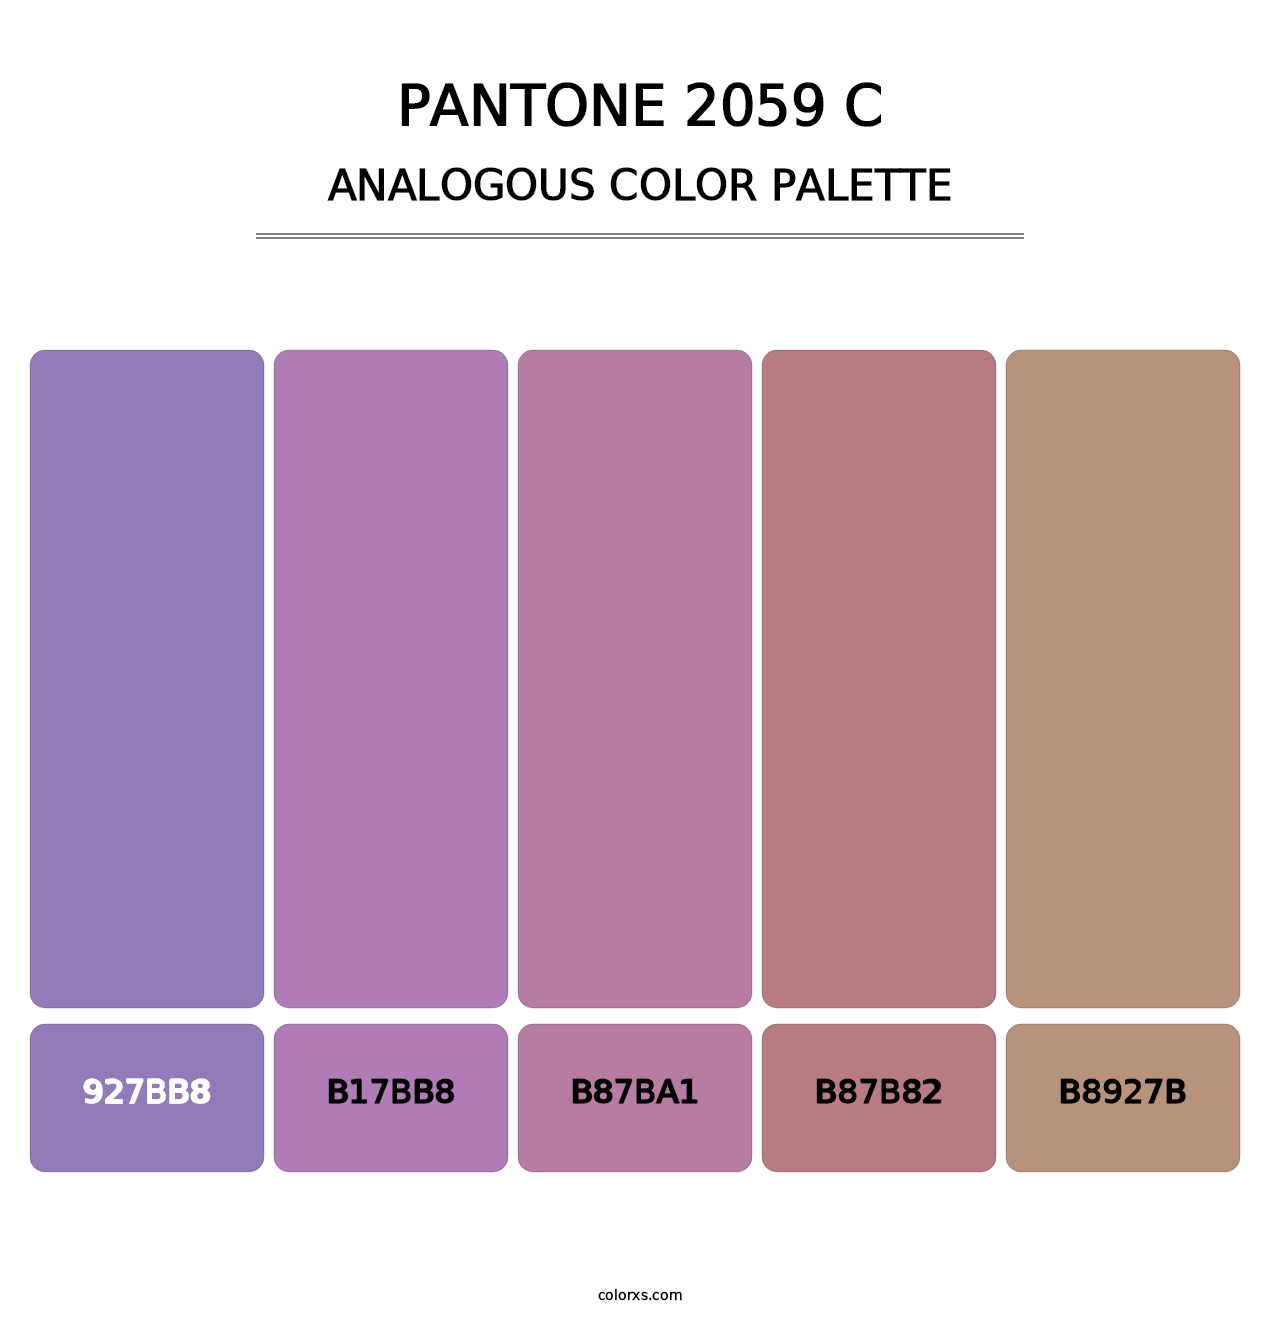 PANTONE 2059 C - Analogous Color Palette